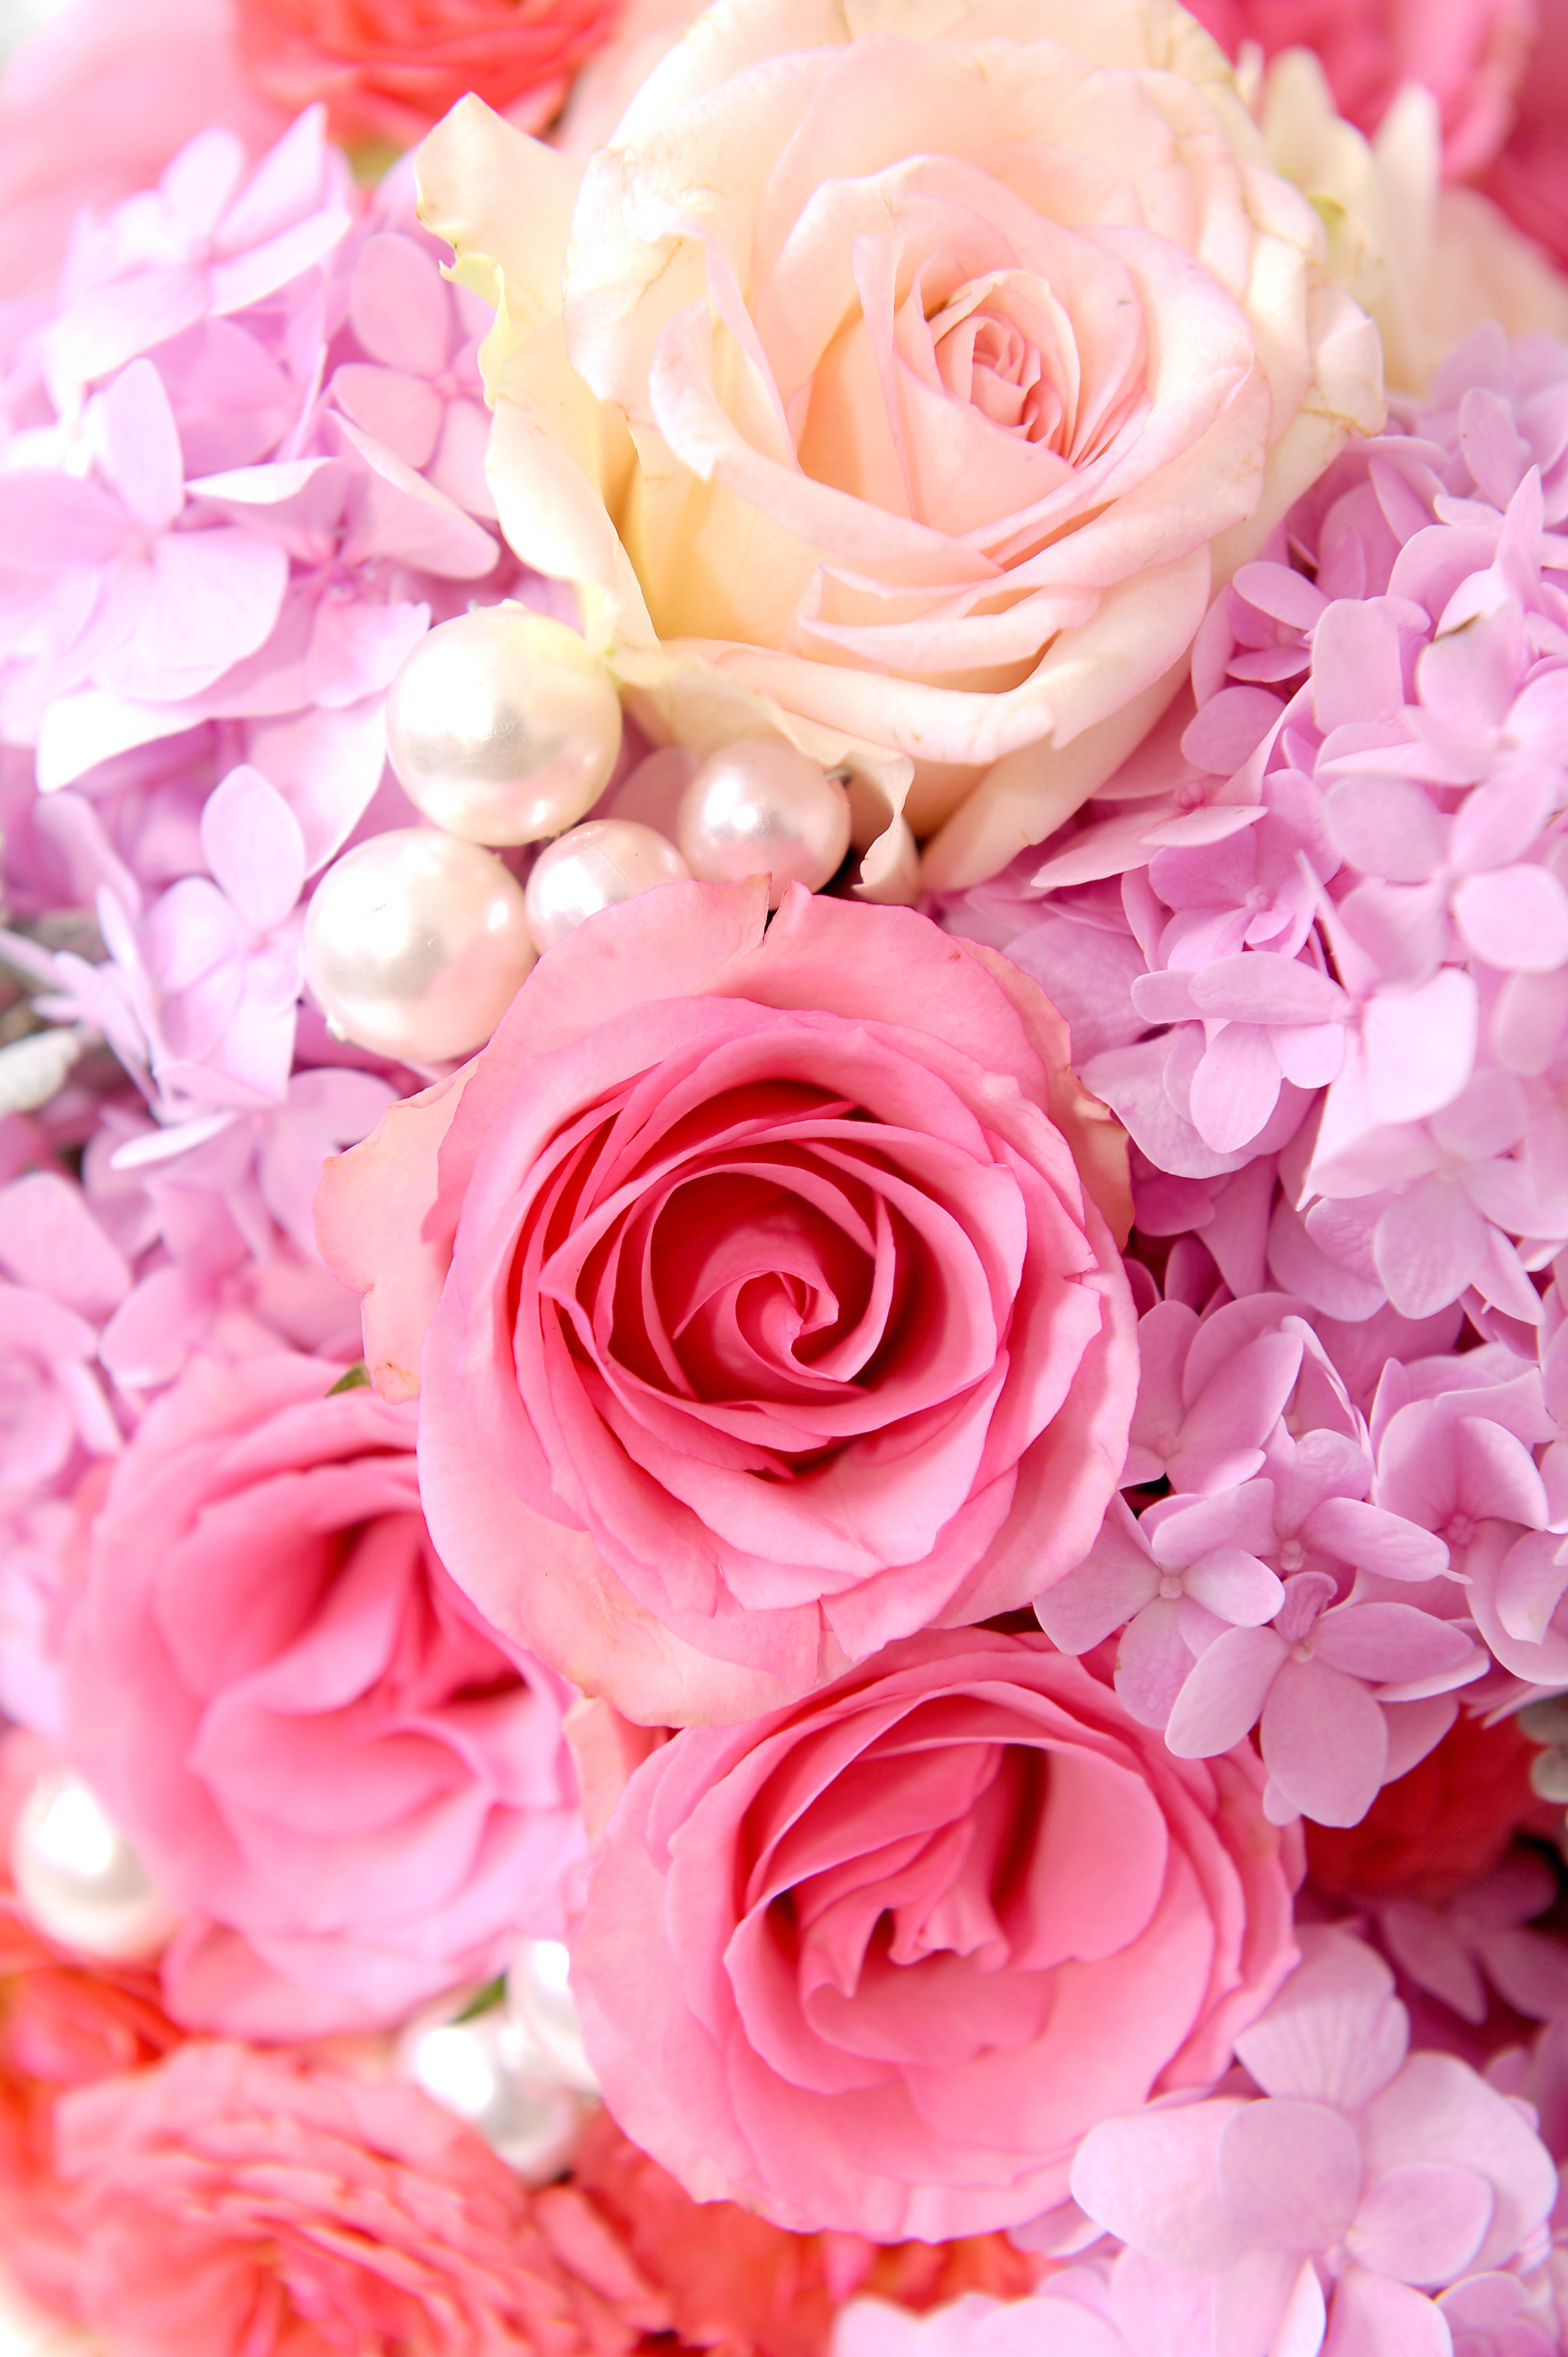 Обои для ватсапа женские красивые розы - фото и картинки: 74 штук